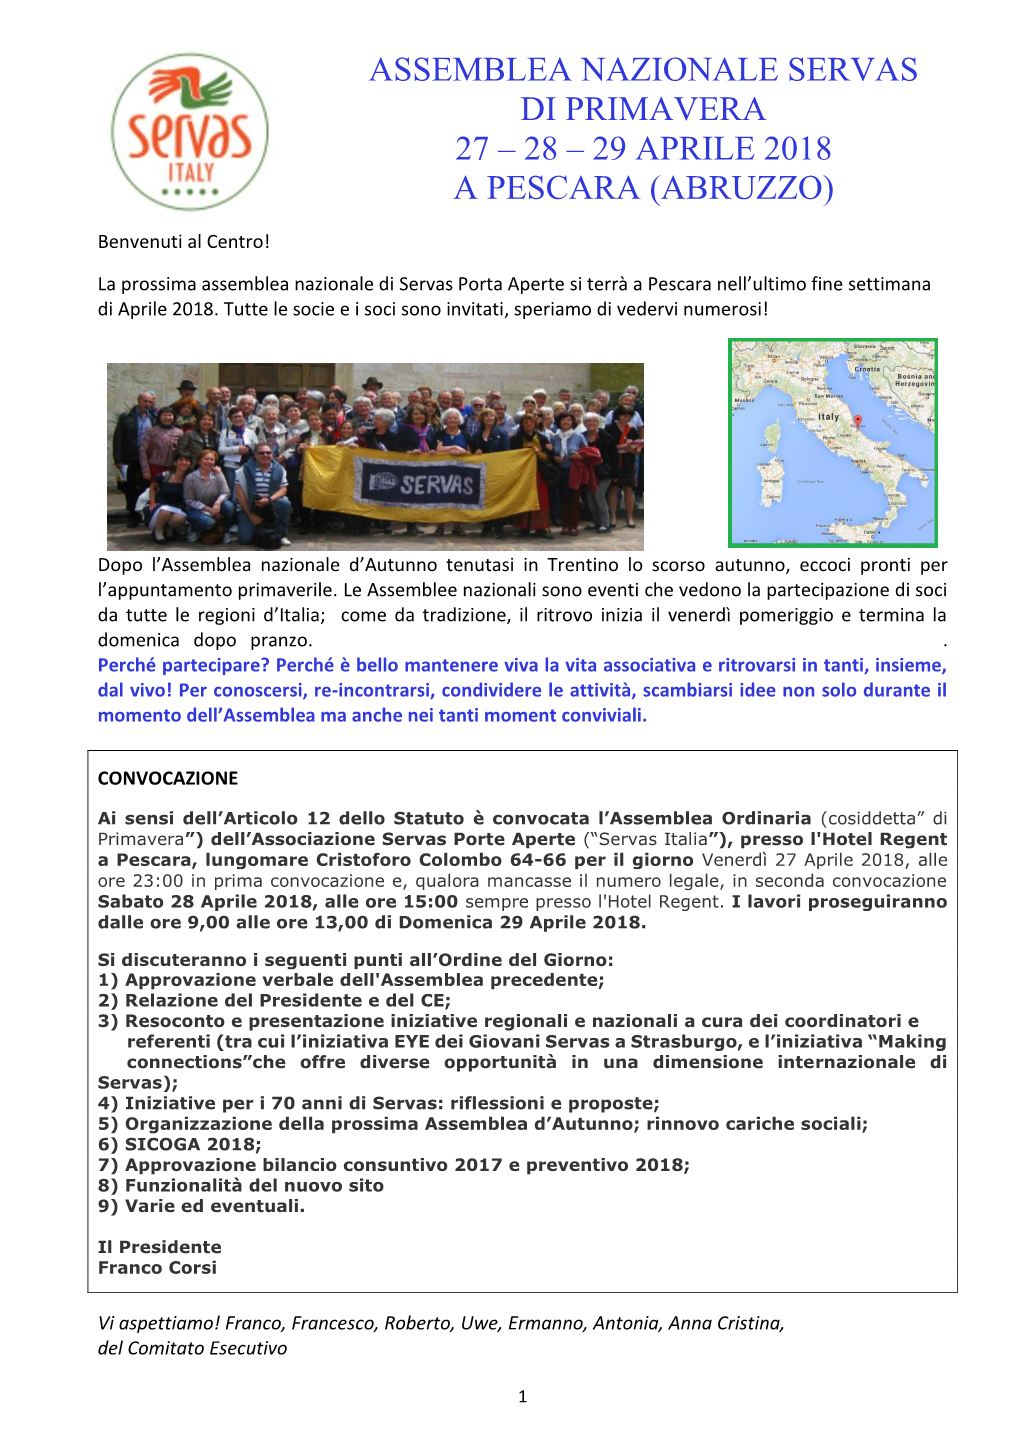 Assemblea Nazionale Servas Di Primavera 27 – 28 – 29 Aprile 2018 a Pescara (Abruzzo)